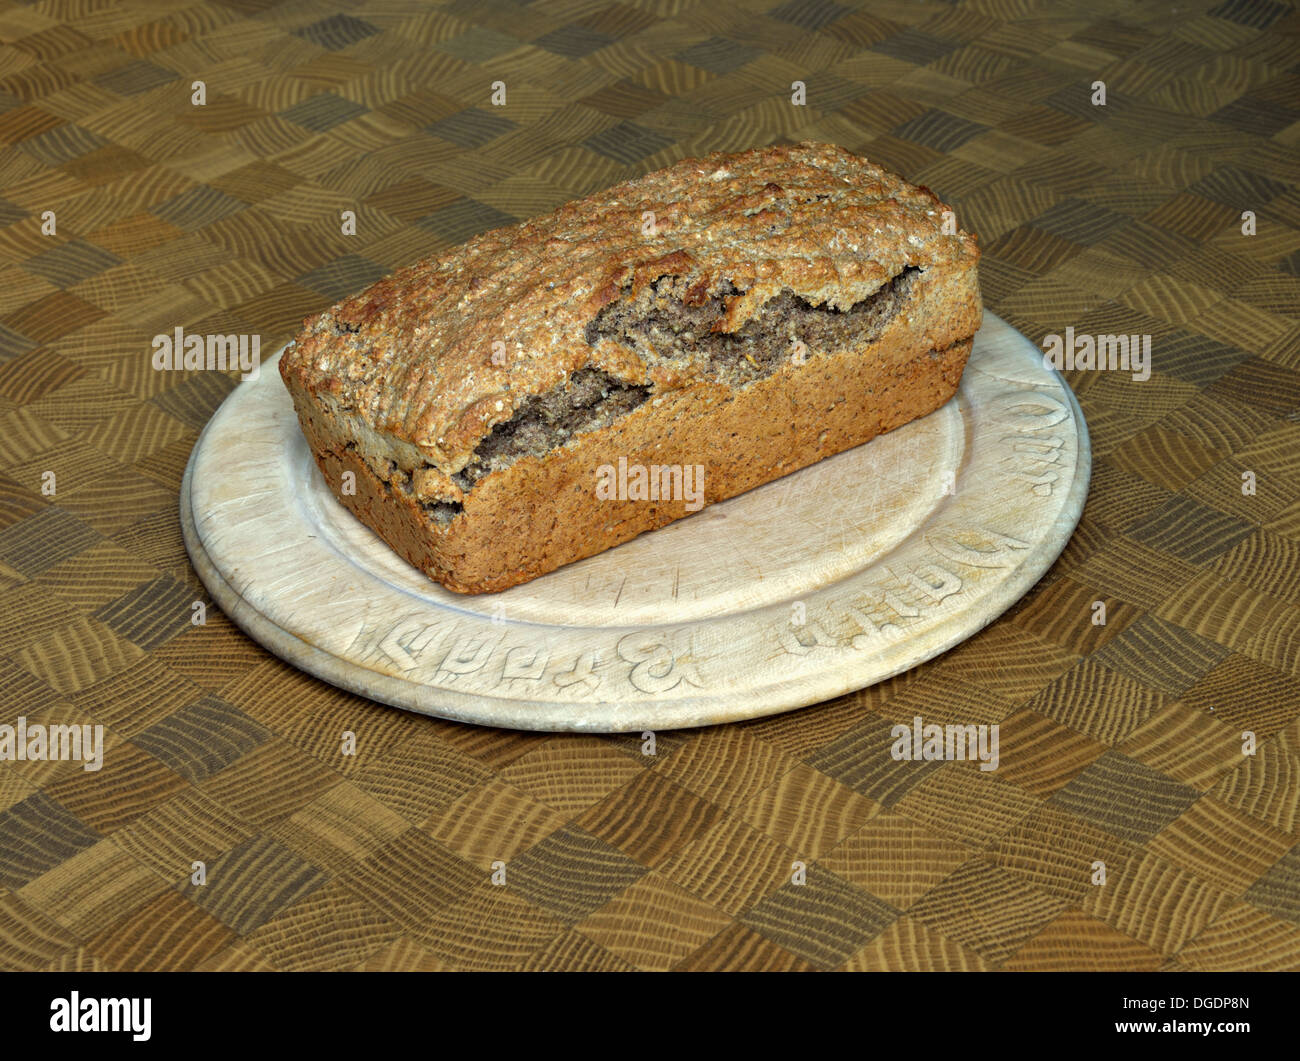 Loaf of Soda Bread on wooden bread board. Stock Photo